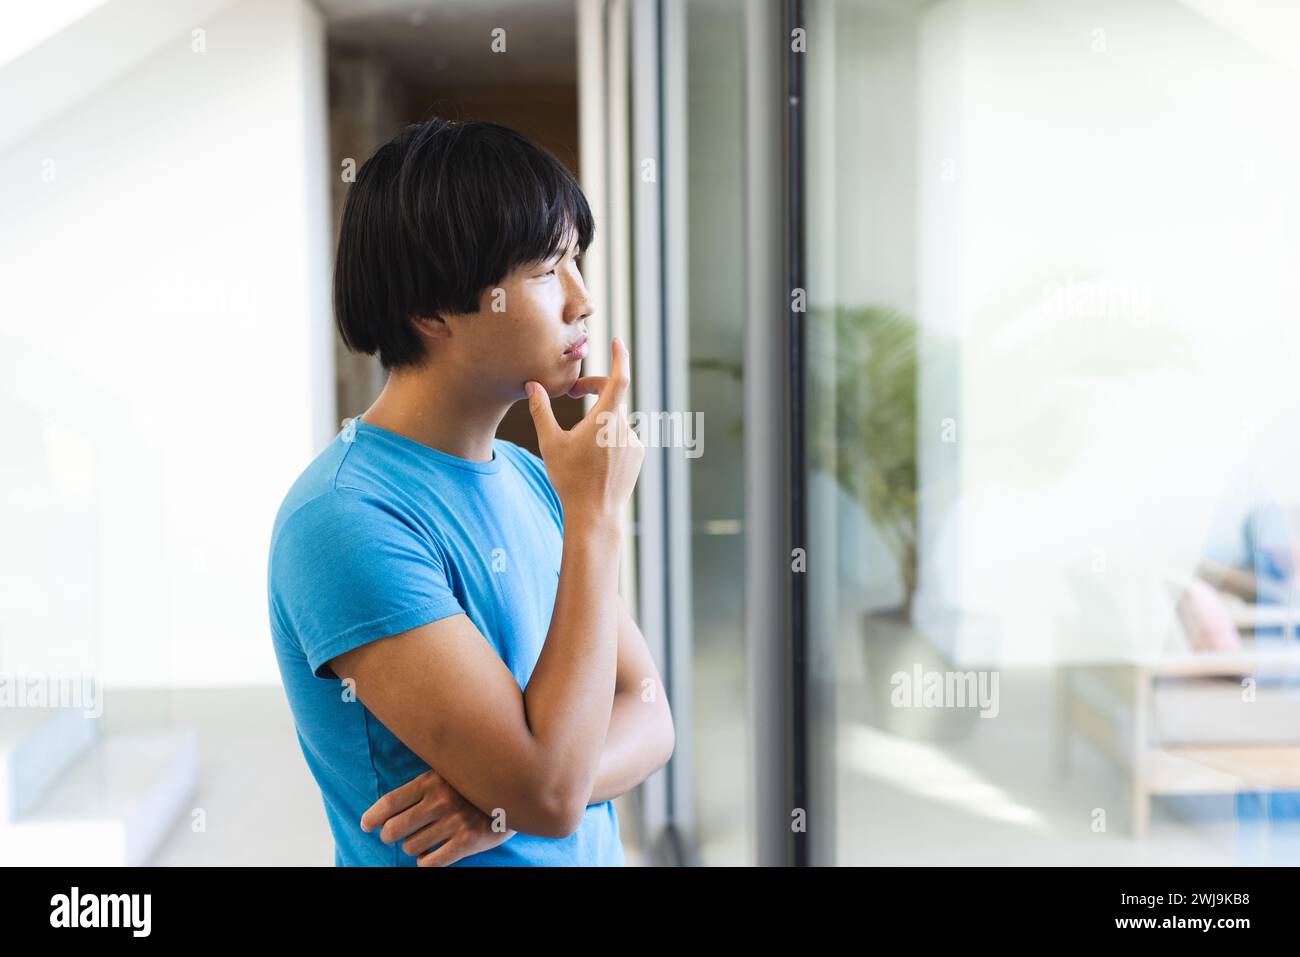 Der asiatische Teenager schaut nachdenklich vor einem Fenster zu Hause Stockfoto